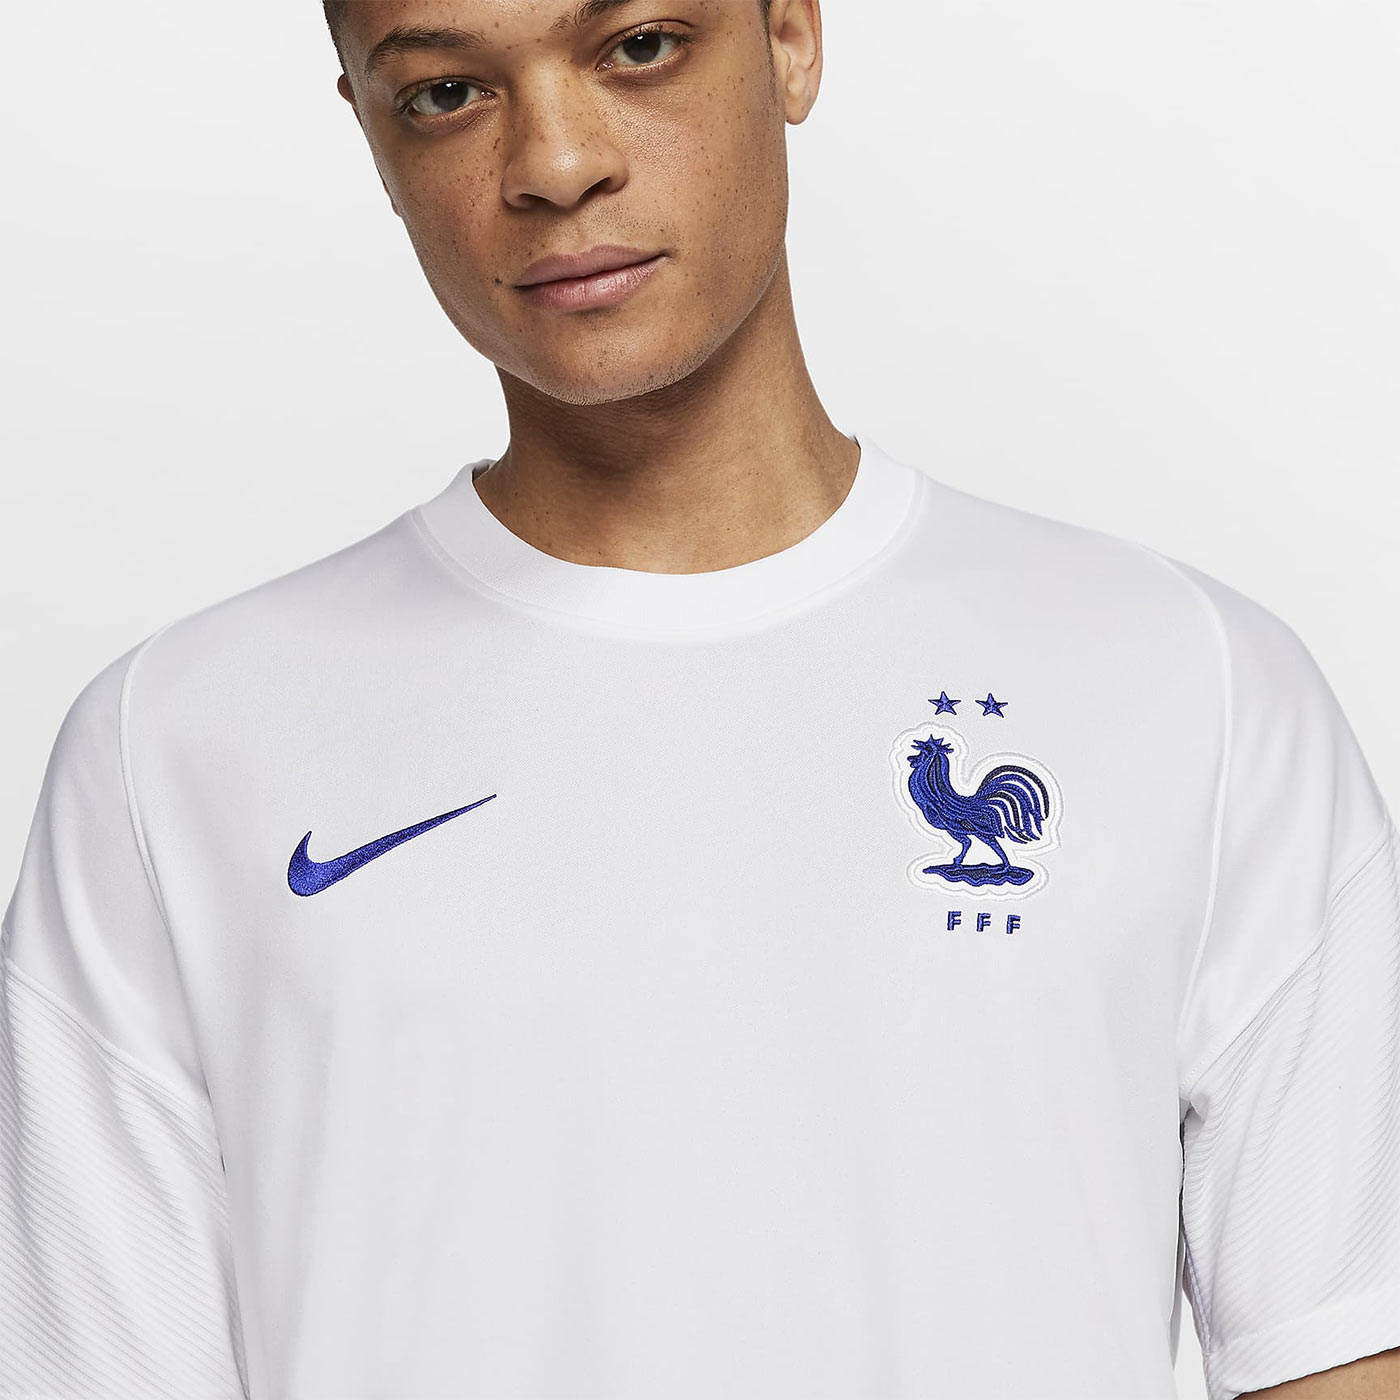 Maglie Francia Europei 2020-2021, il filo rosso di Nike